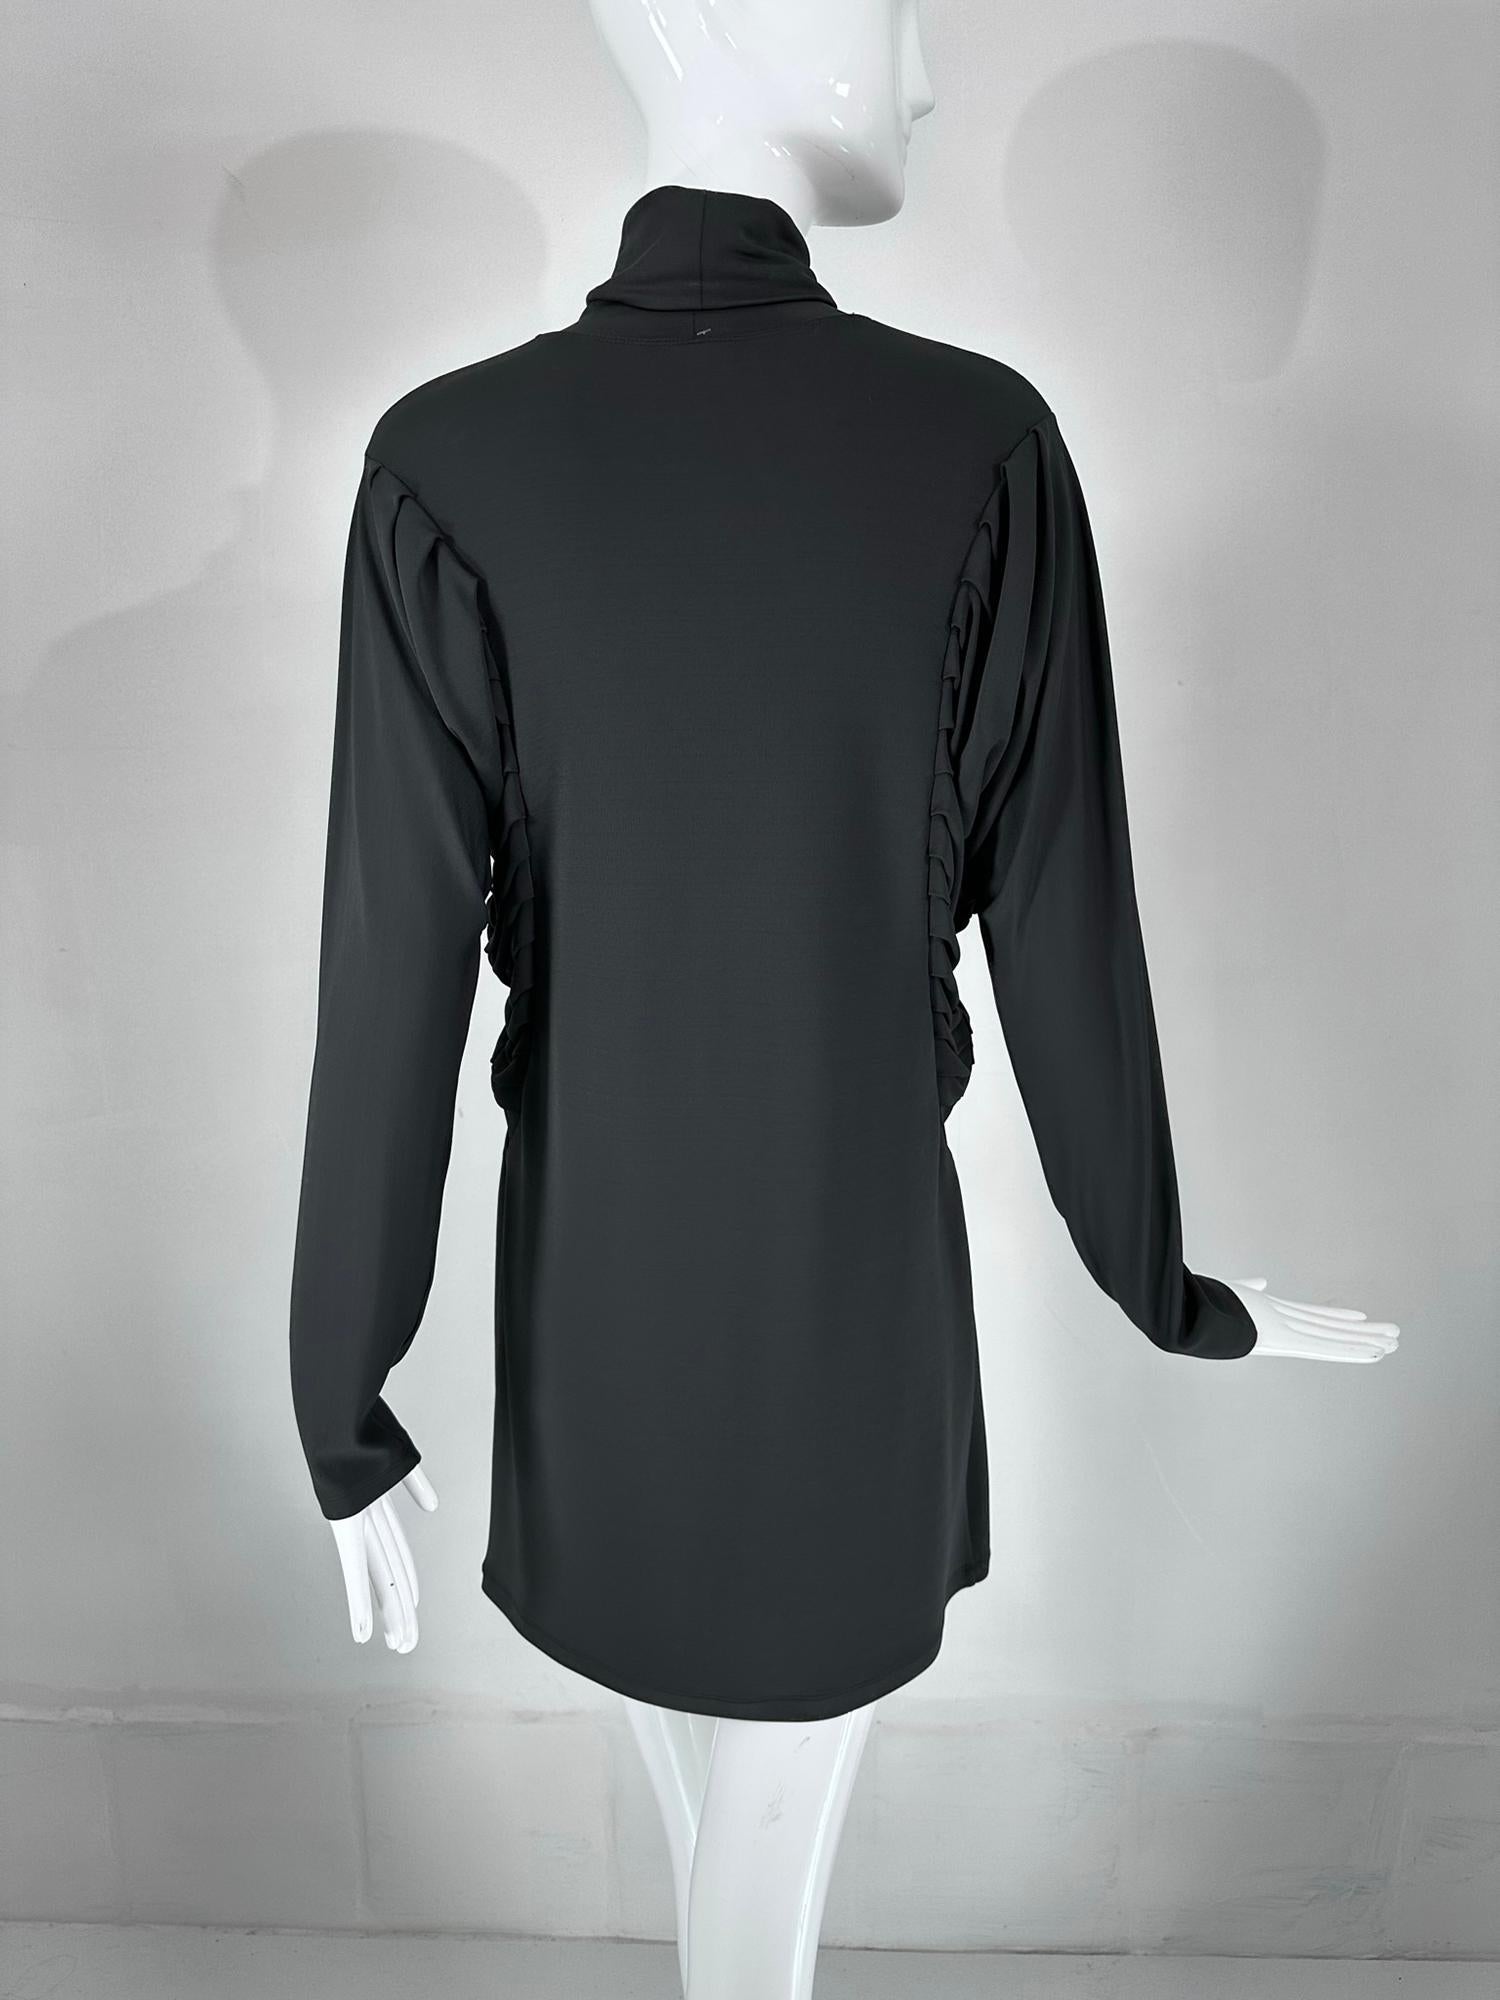 Fendi Silky Black Jersey Pleated Bat Wing Turtle Neck Dress 40 For Sale 5